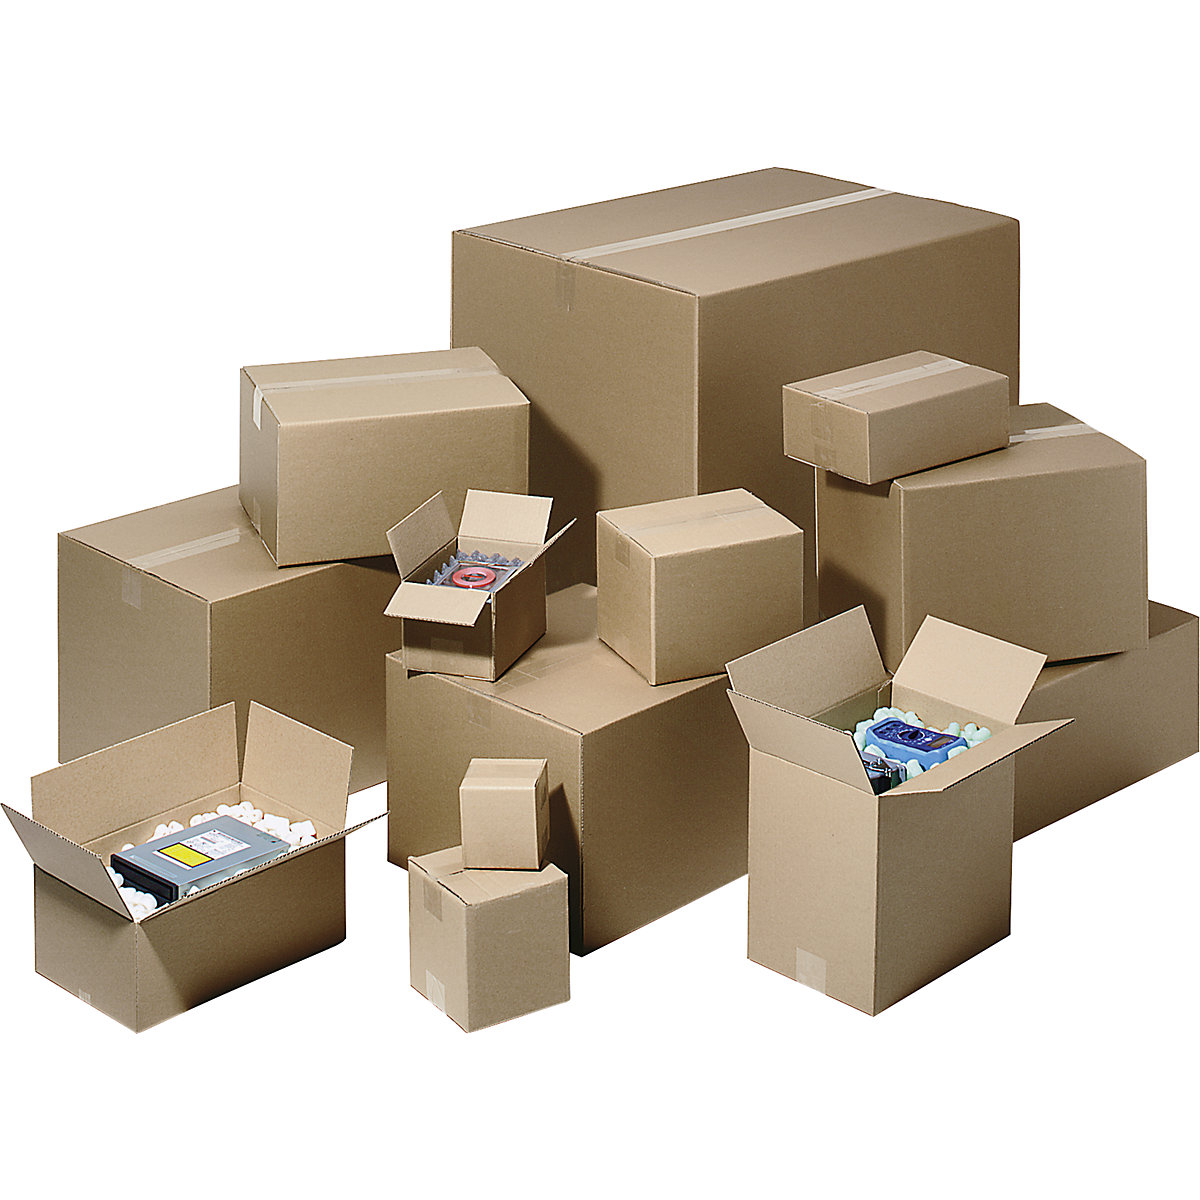 Folding cardboard box, FEFCO 0201